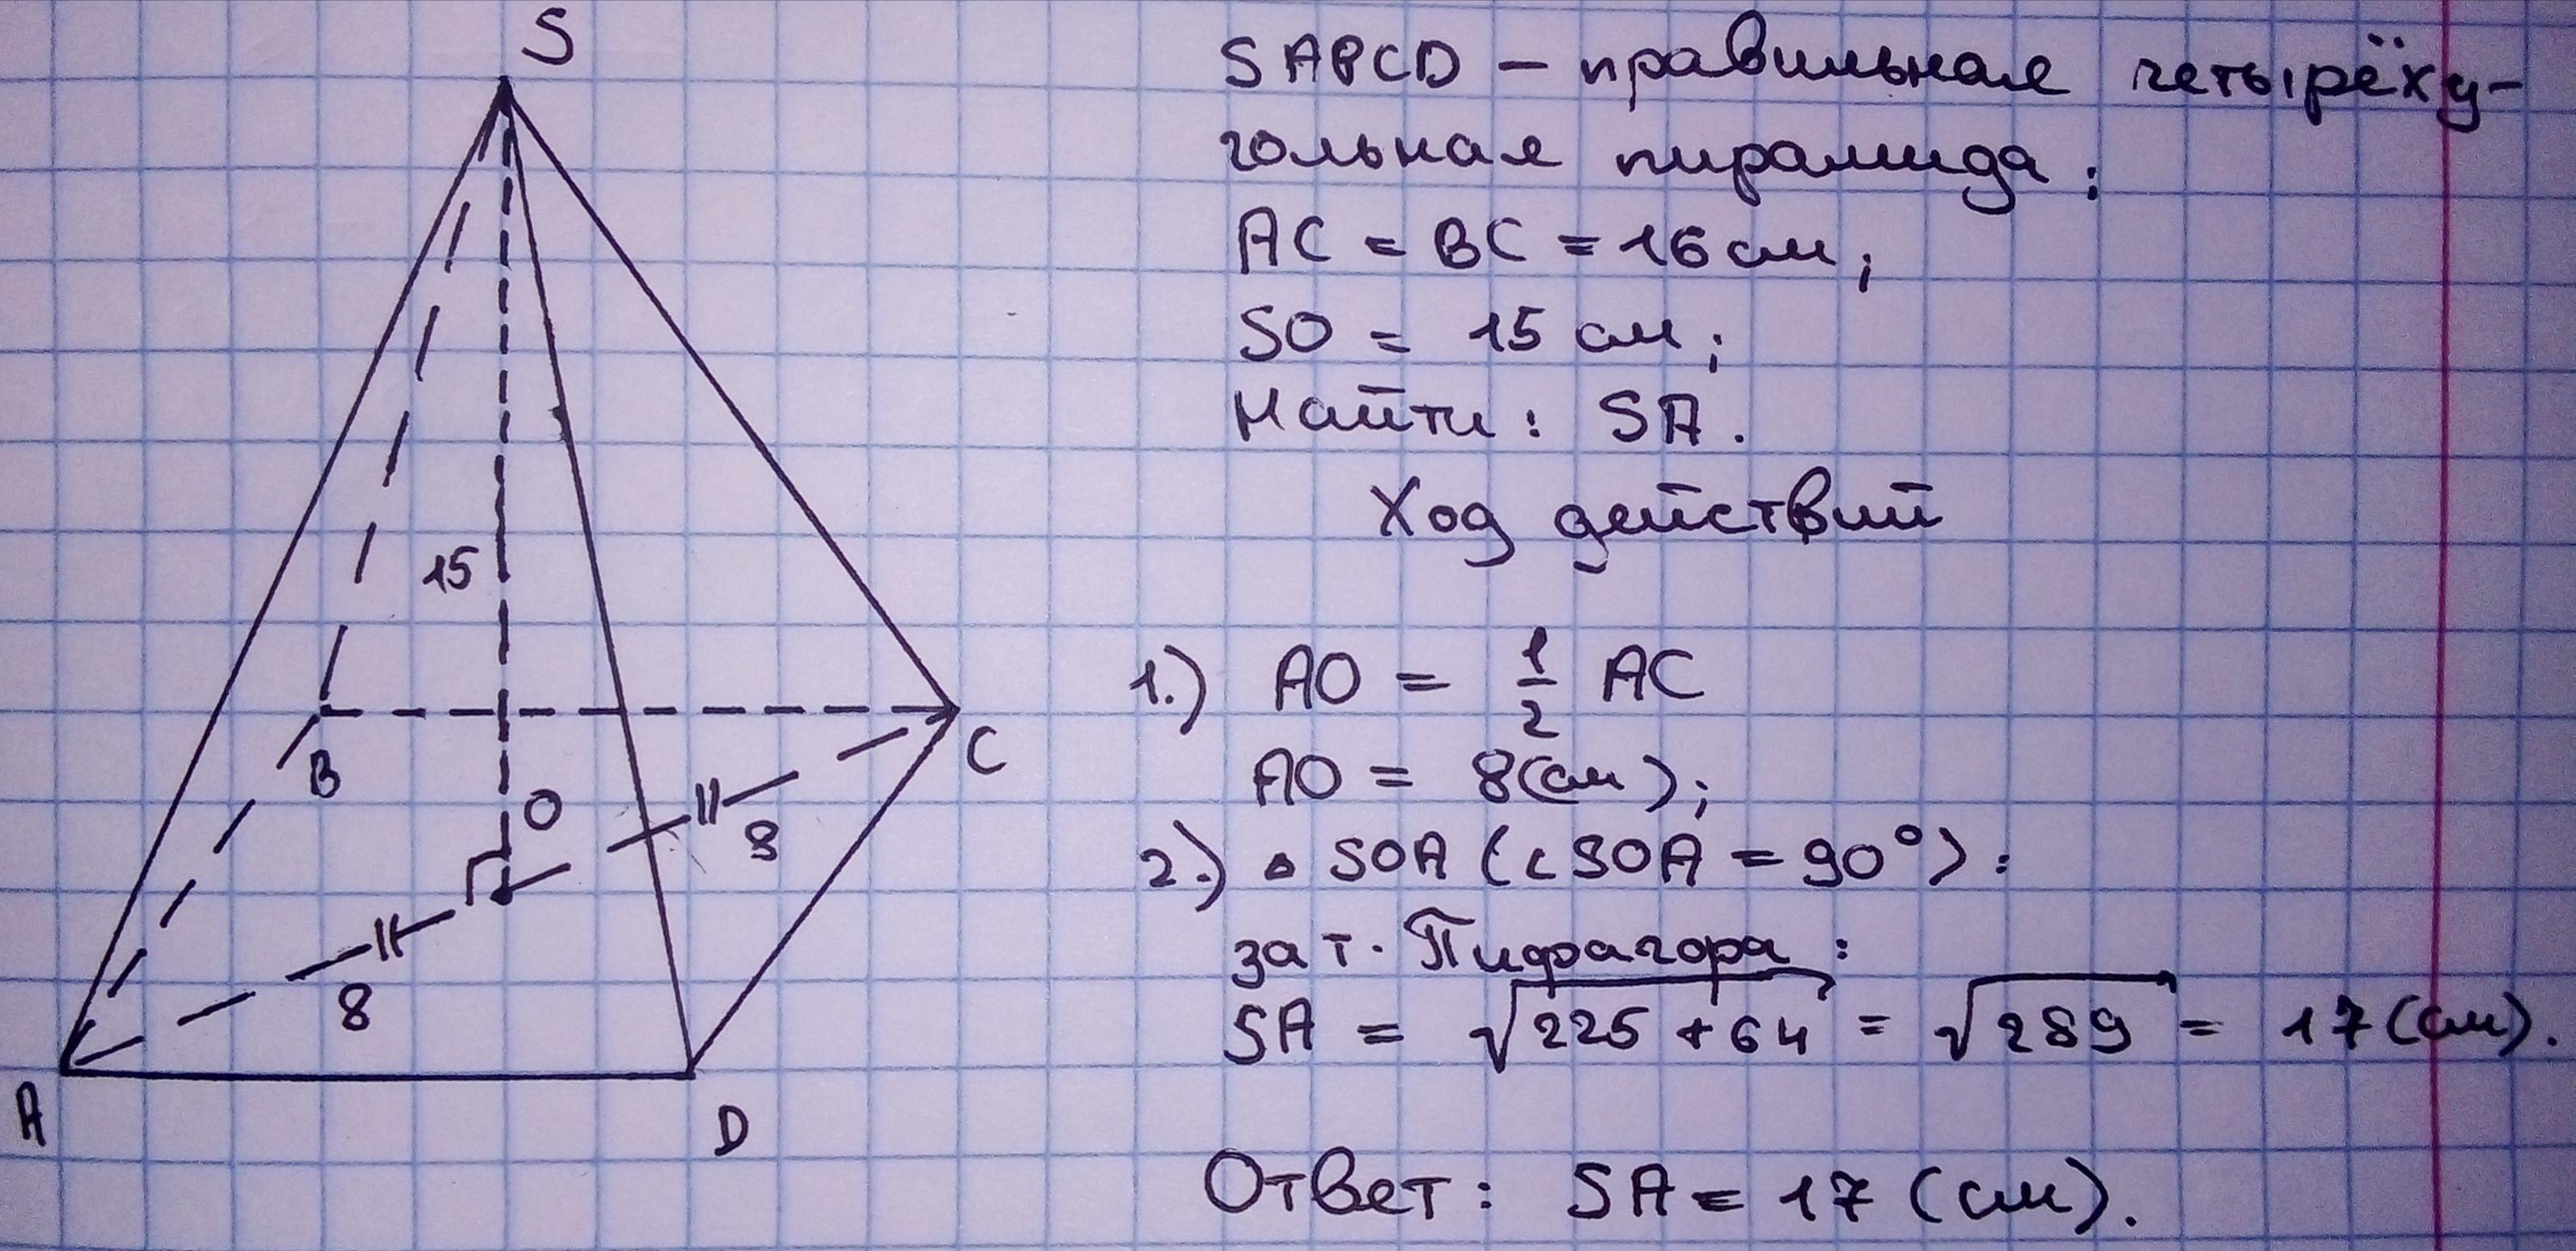 Правильная четырехугольная пирамида диагональ основания ac. Диагональ основания правильной четырехугольной пирамиды. Как найти диагональ правильной четырехугольной пирамиды. Каждое ребро правильной четырехугольной пирамиды равно 10. Правильная четырехугольная пирамида по клеточкам.